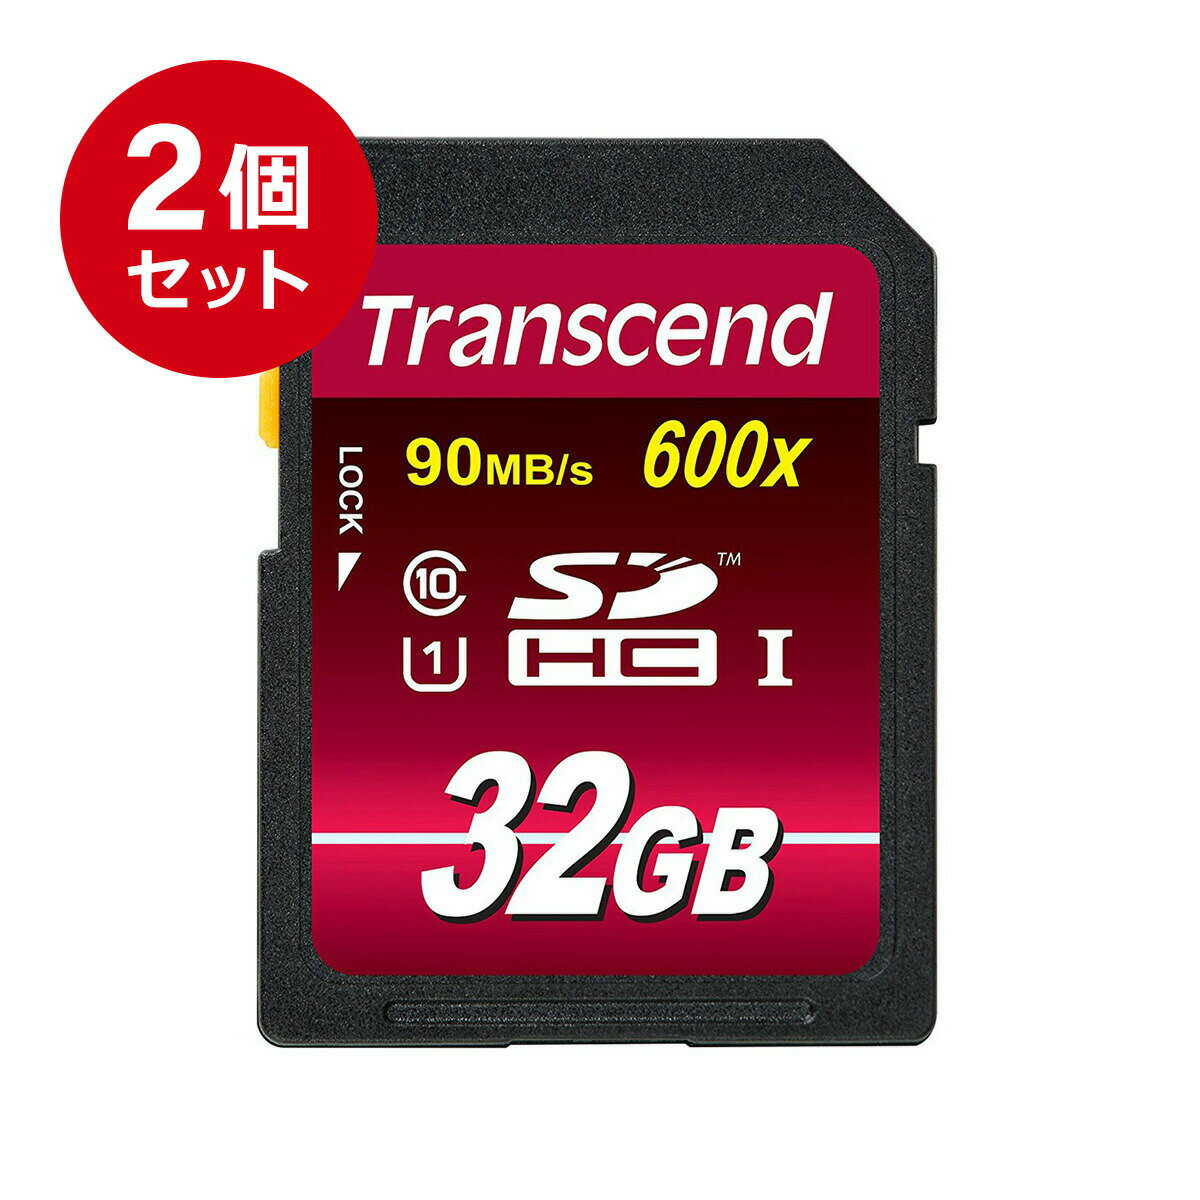 【まとめ割 2個セット】Transcend SDカード 32GB Class10 UHS-I Ultimate 最大90MB/s 5年保証 メモリーカード クラス10 入学 卒業 32 2枚